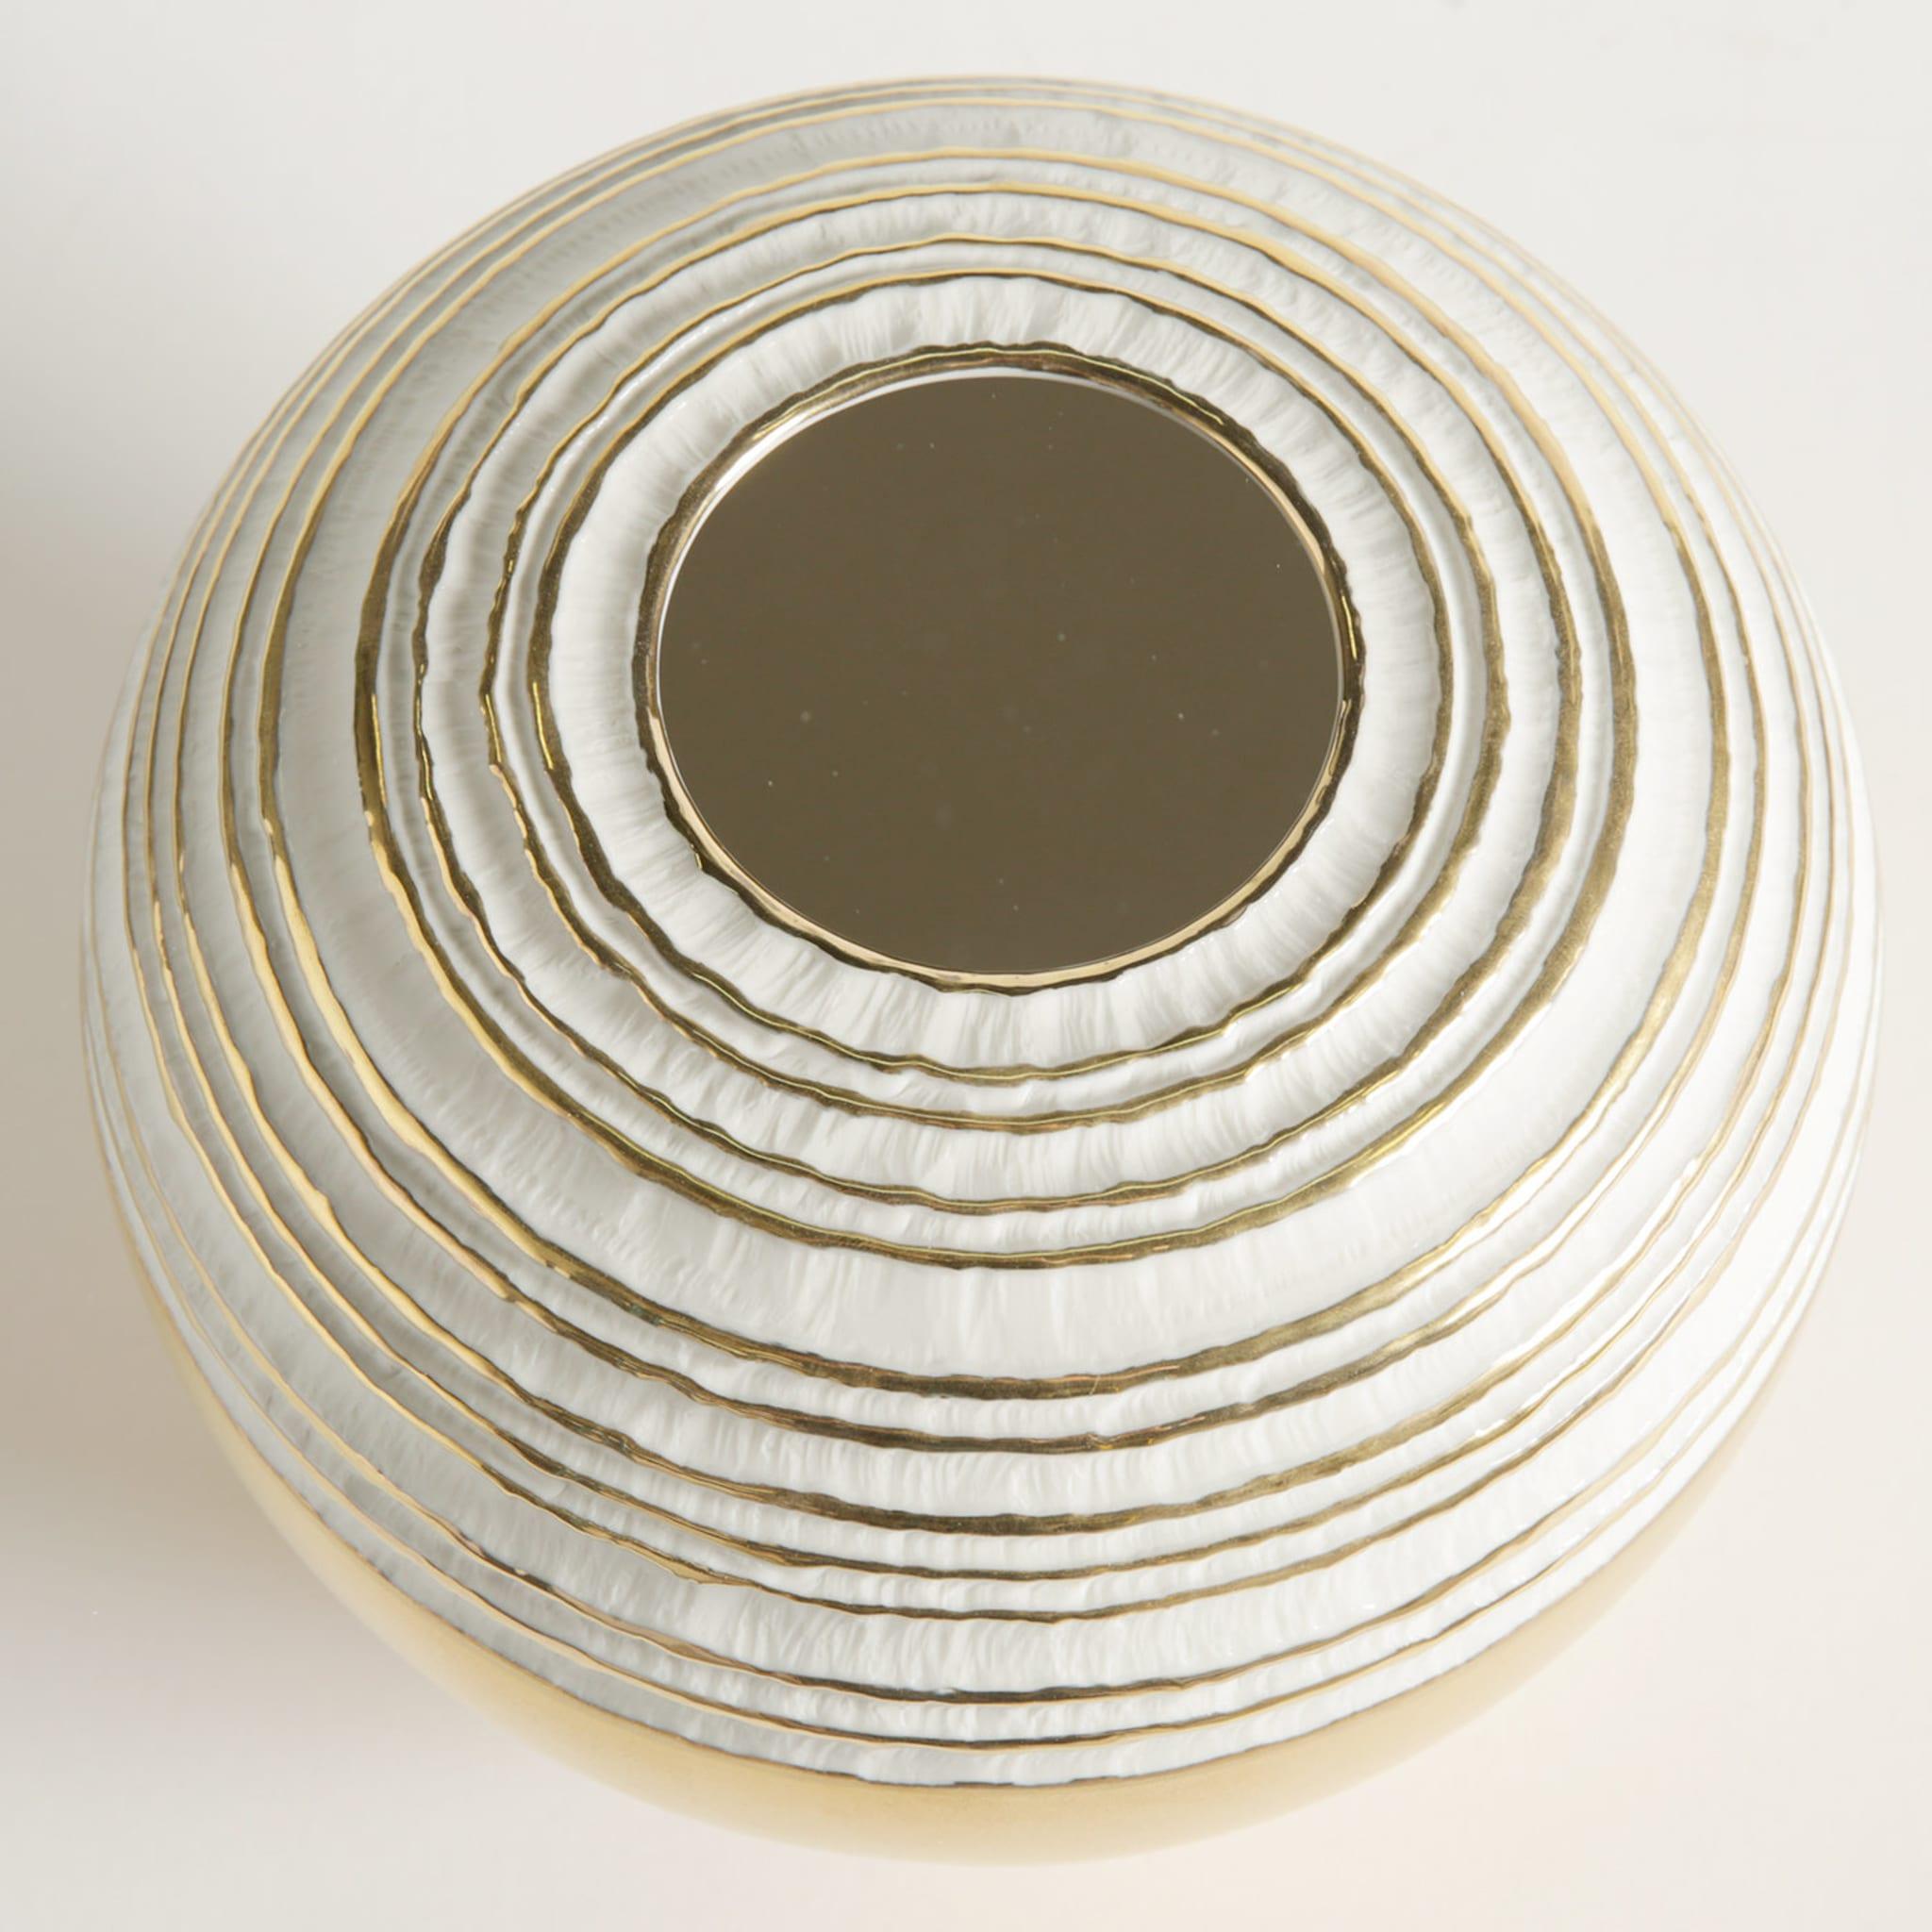 Dans ce vase en porcelaine exquis, un design classique est enrichi par la présence d'une précieuse couche externe d'or 23k appliquée à la main qui illumine le fond de la pièce et s'étend horizontalement en anneaux concentriques autour du sommet,